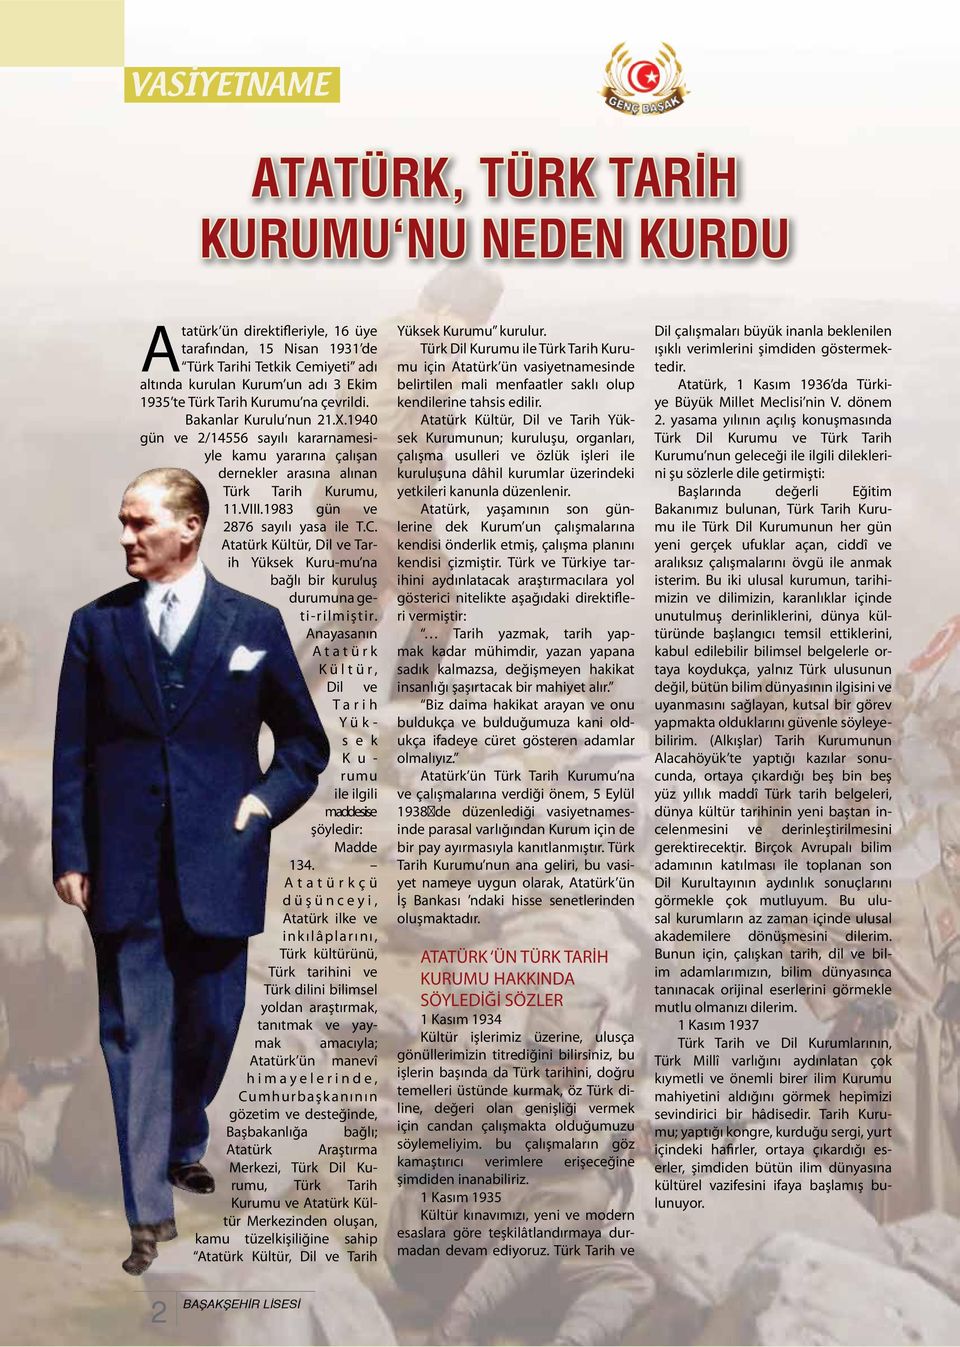 1983 gün ve 2876 sayılı yasa ile T.C. Atatürk Kültür, Dil ve Tarih Yüksek Kuru-mu na bağlı bir kuruluş durumuna geti-rilmiştir.